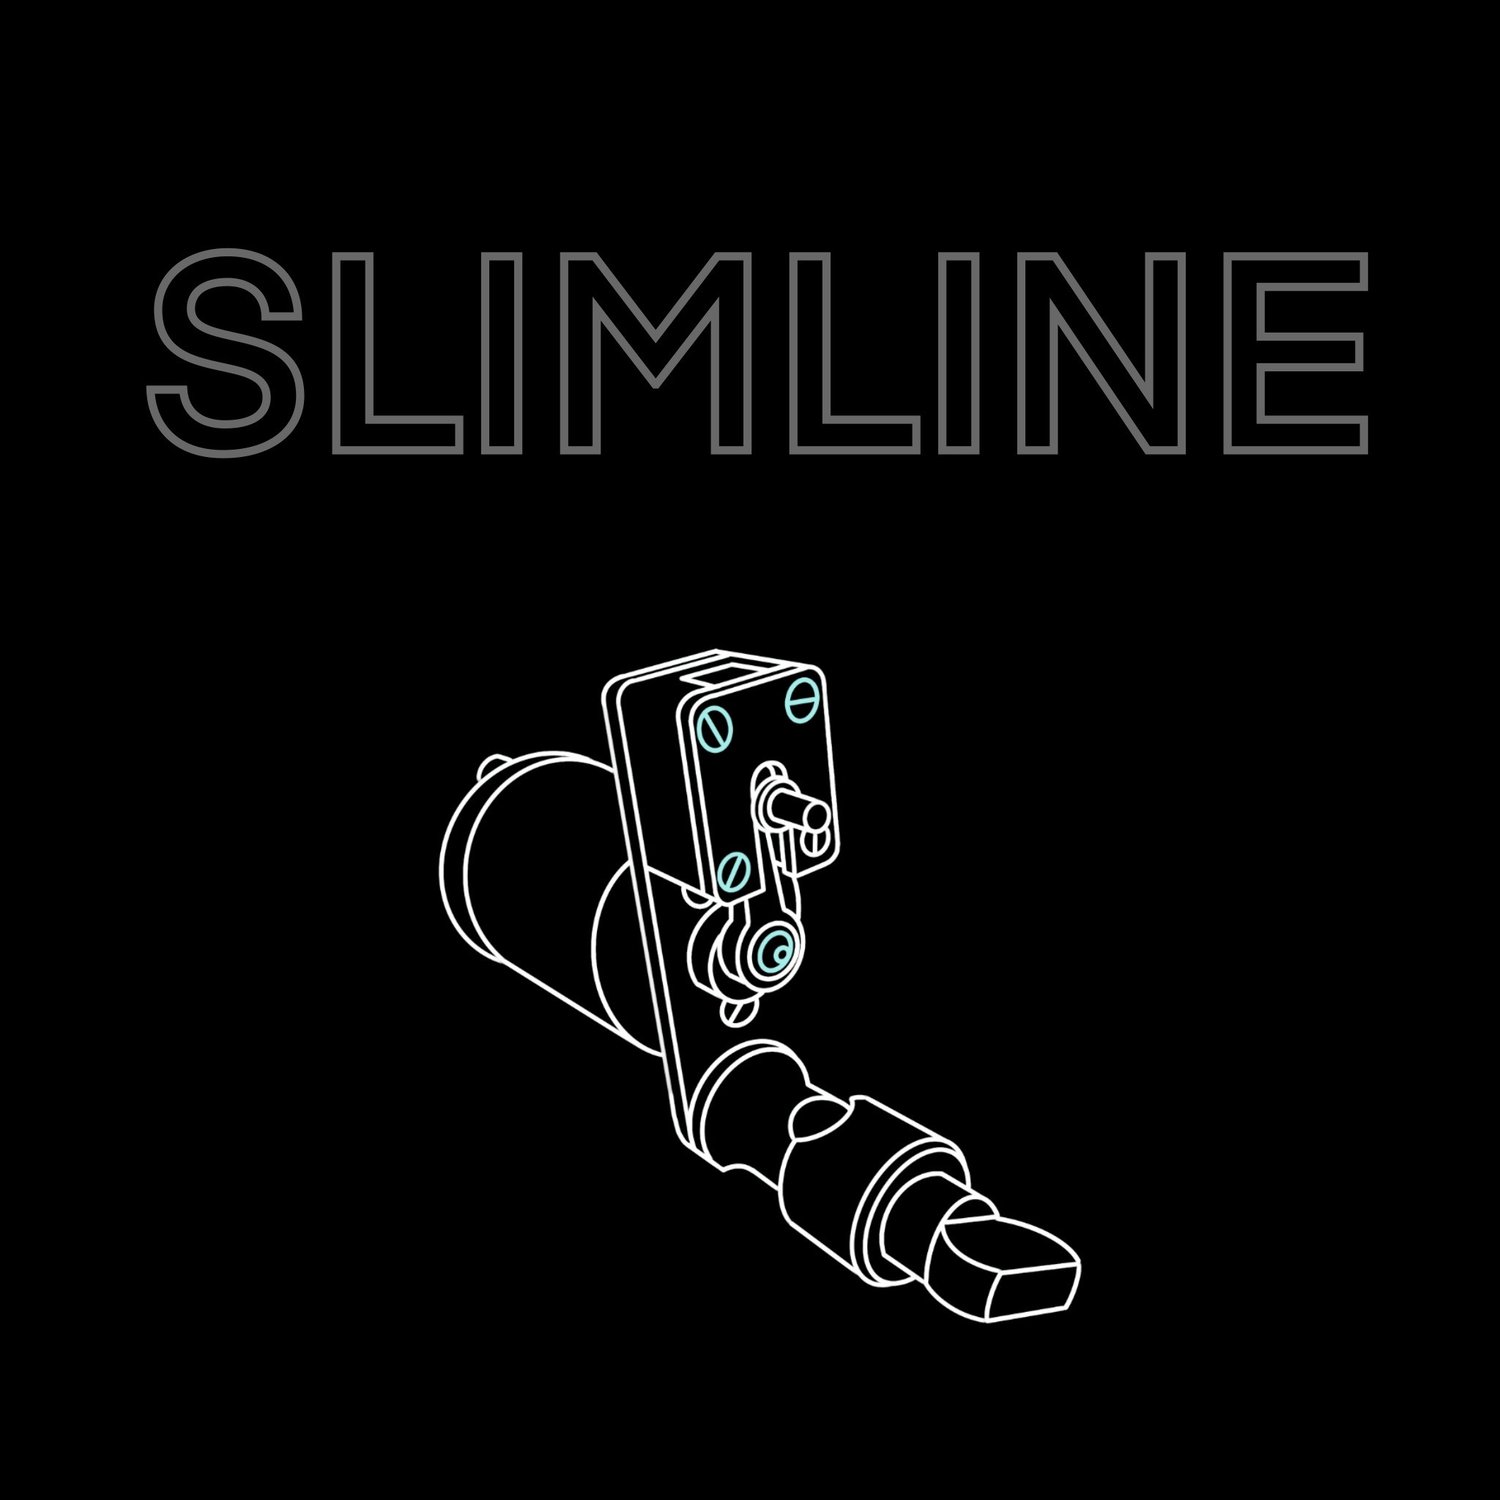 Slimline 